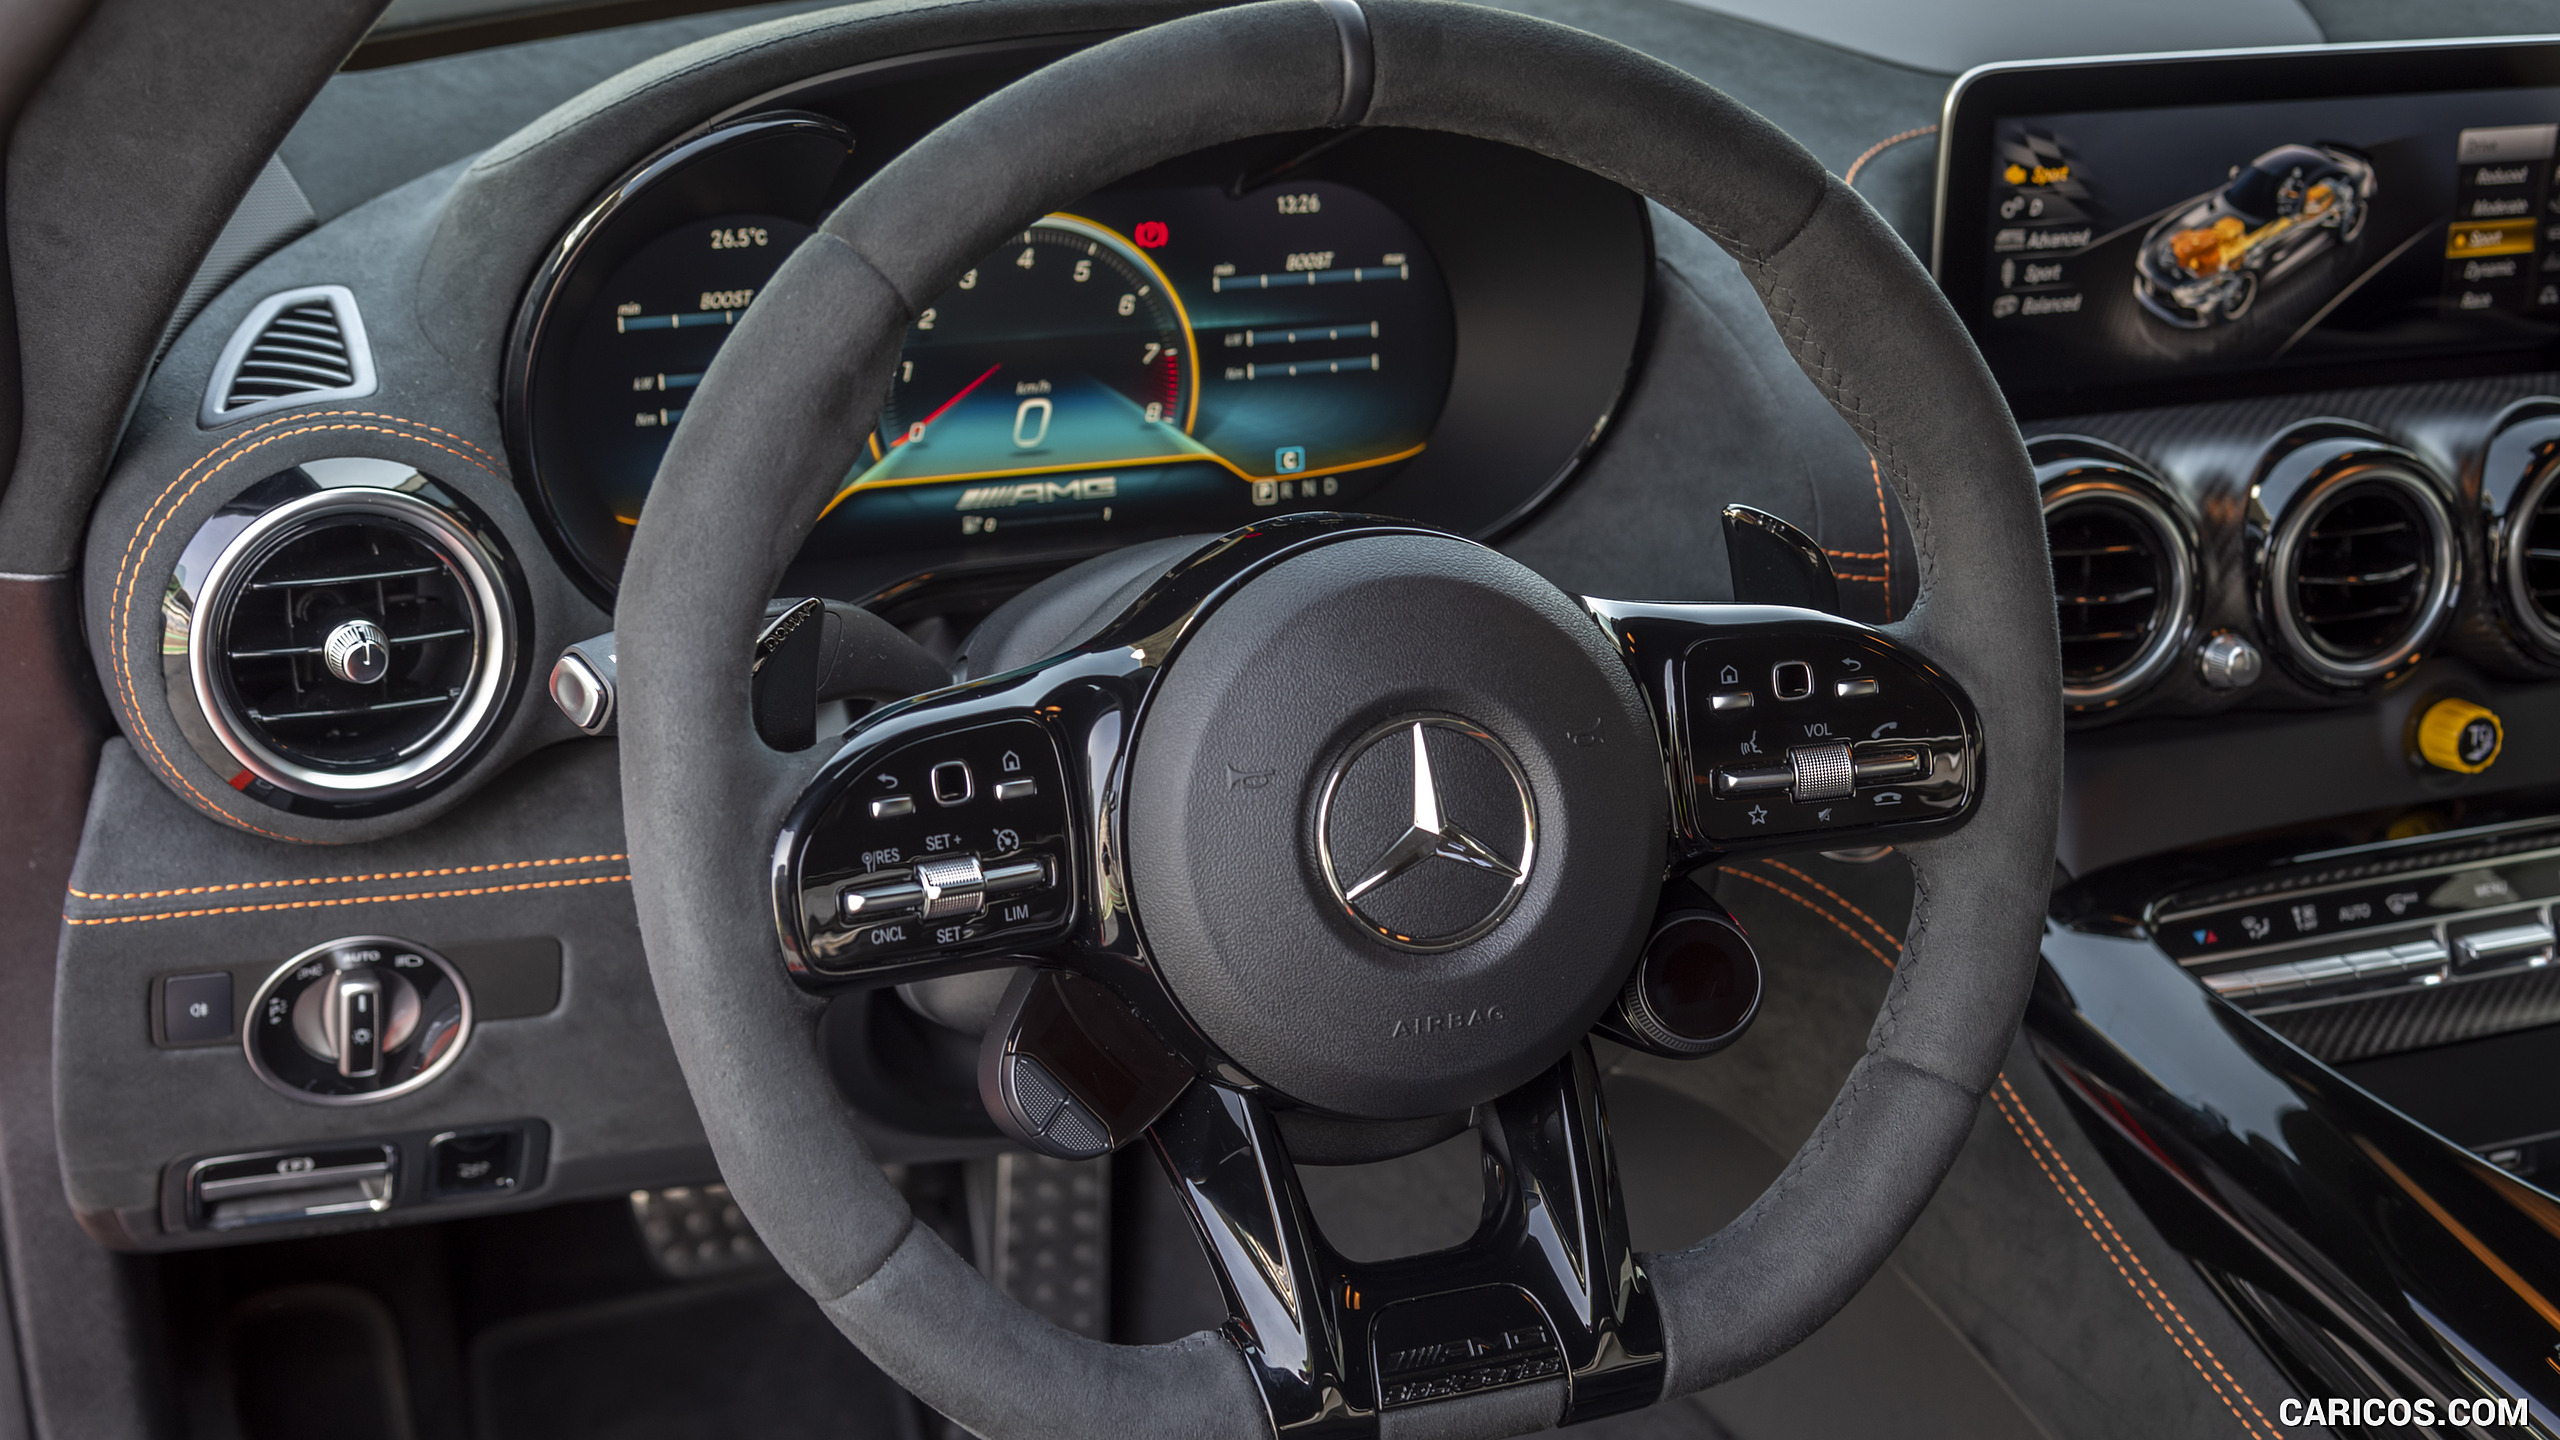 2021 Mercedes-AMG GT Black Series - Interior, Steering Wheel, #195 of 215